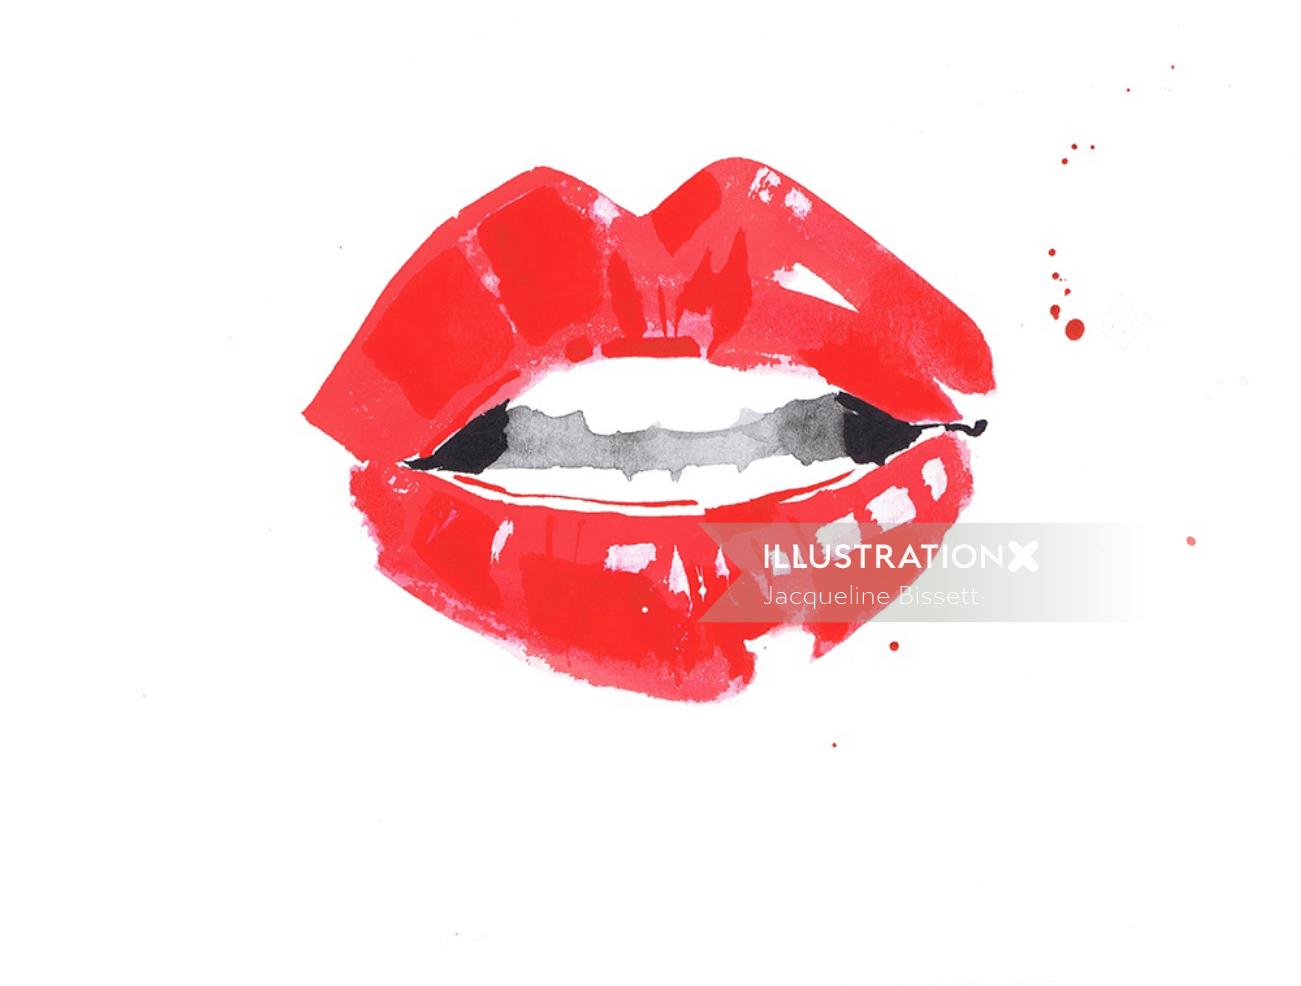 Illustration des lèvres rouges